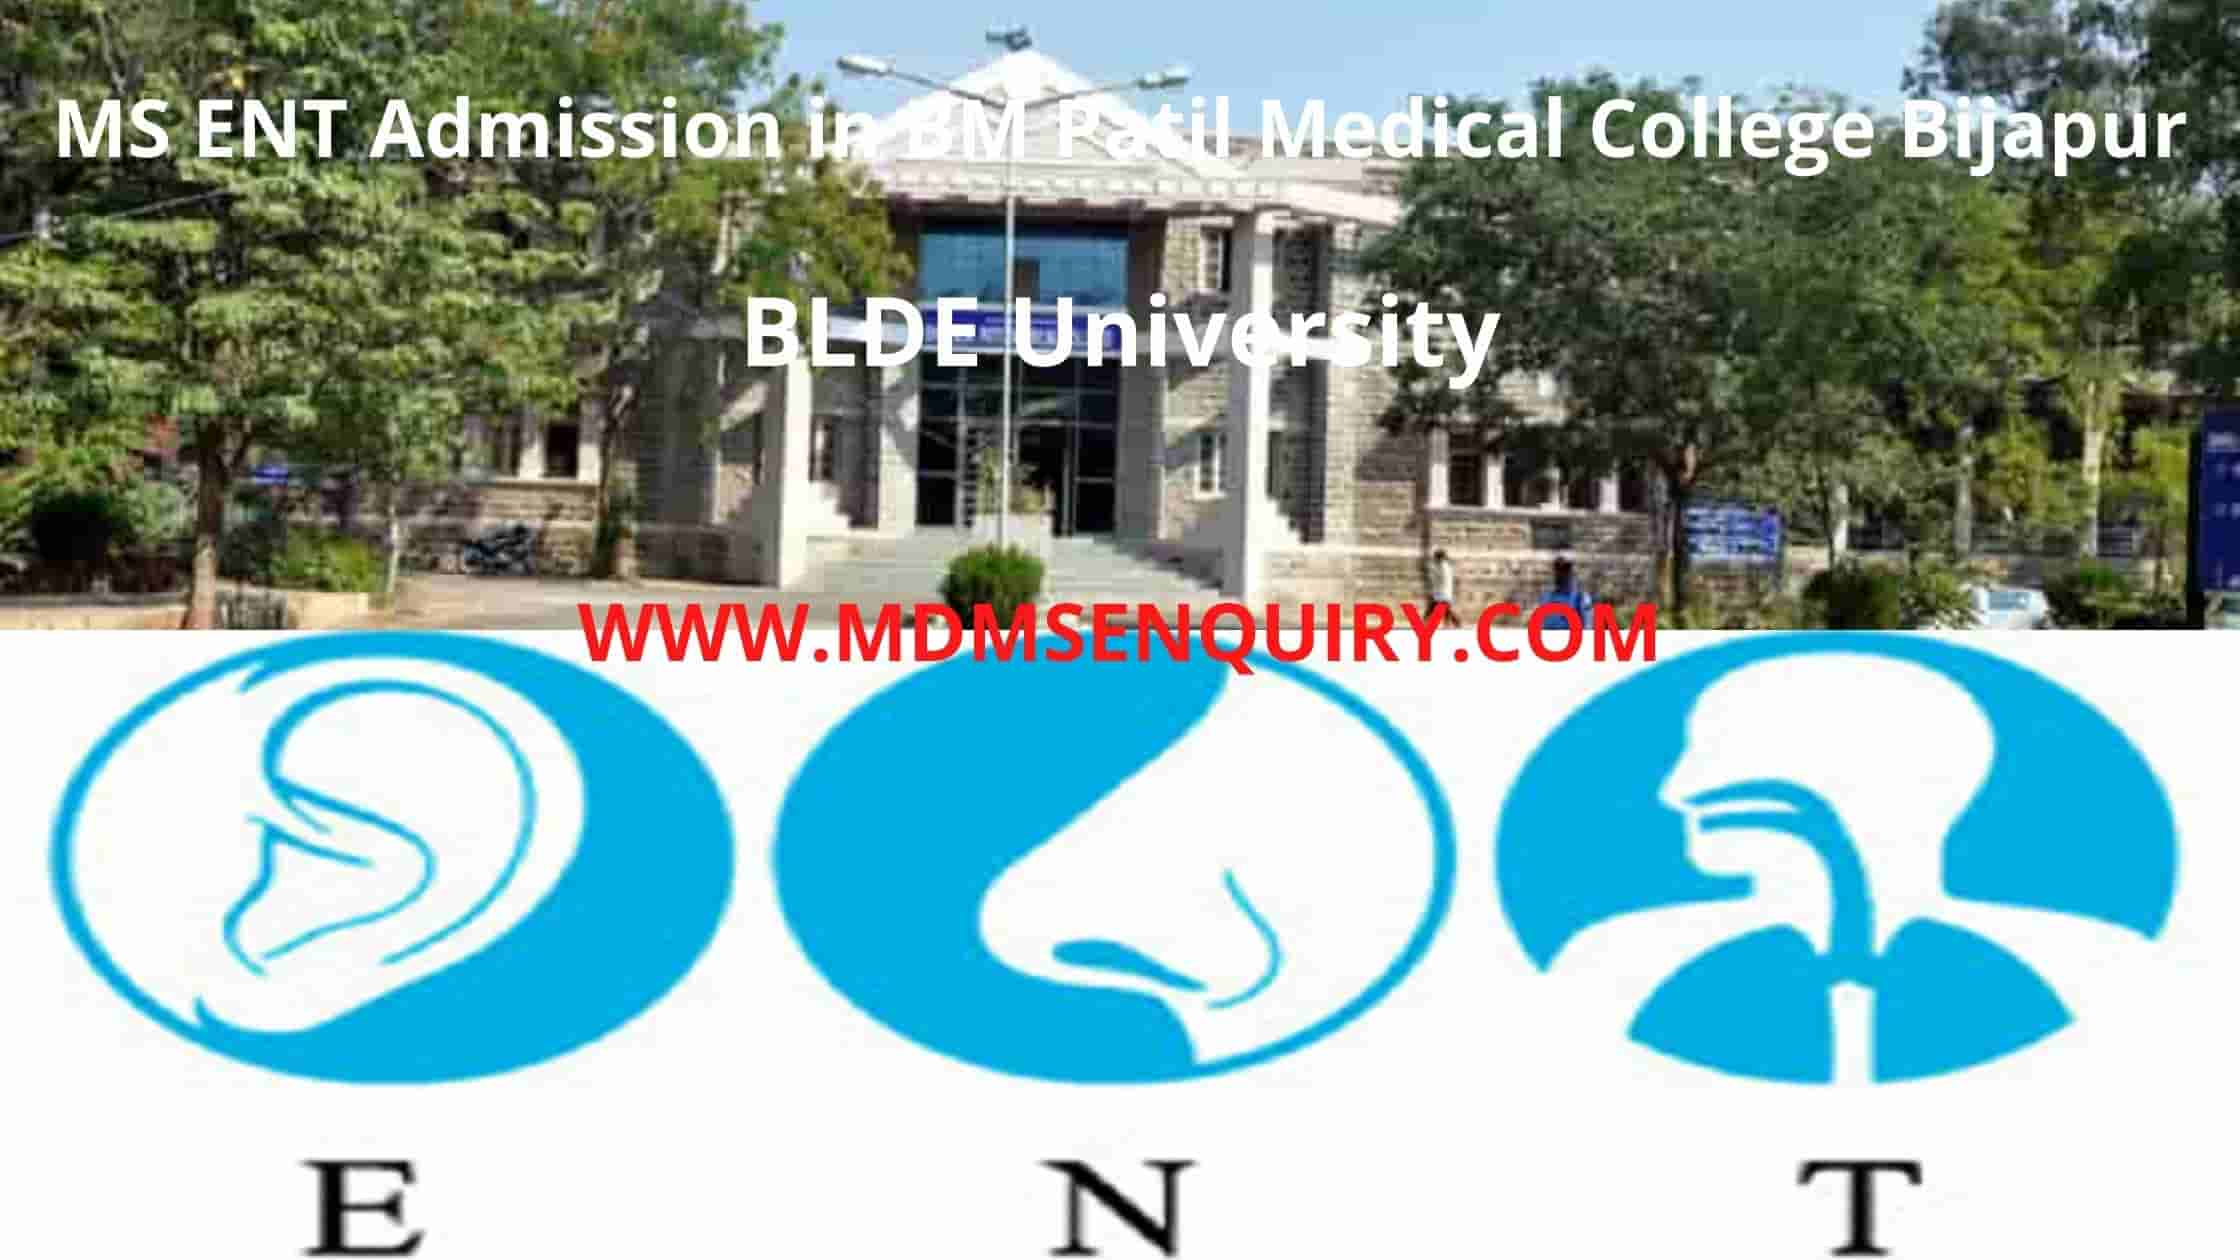 MS ENT admission in B.M Patil Medical College (BLDE University) Bijapur